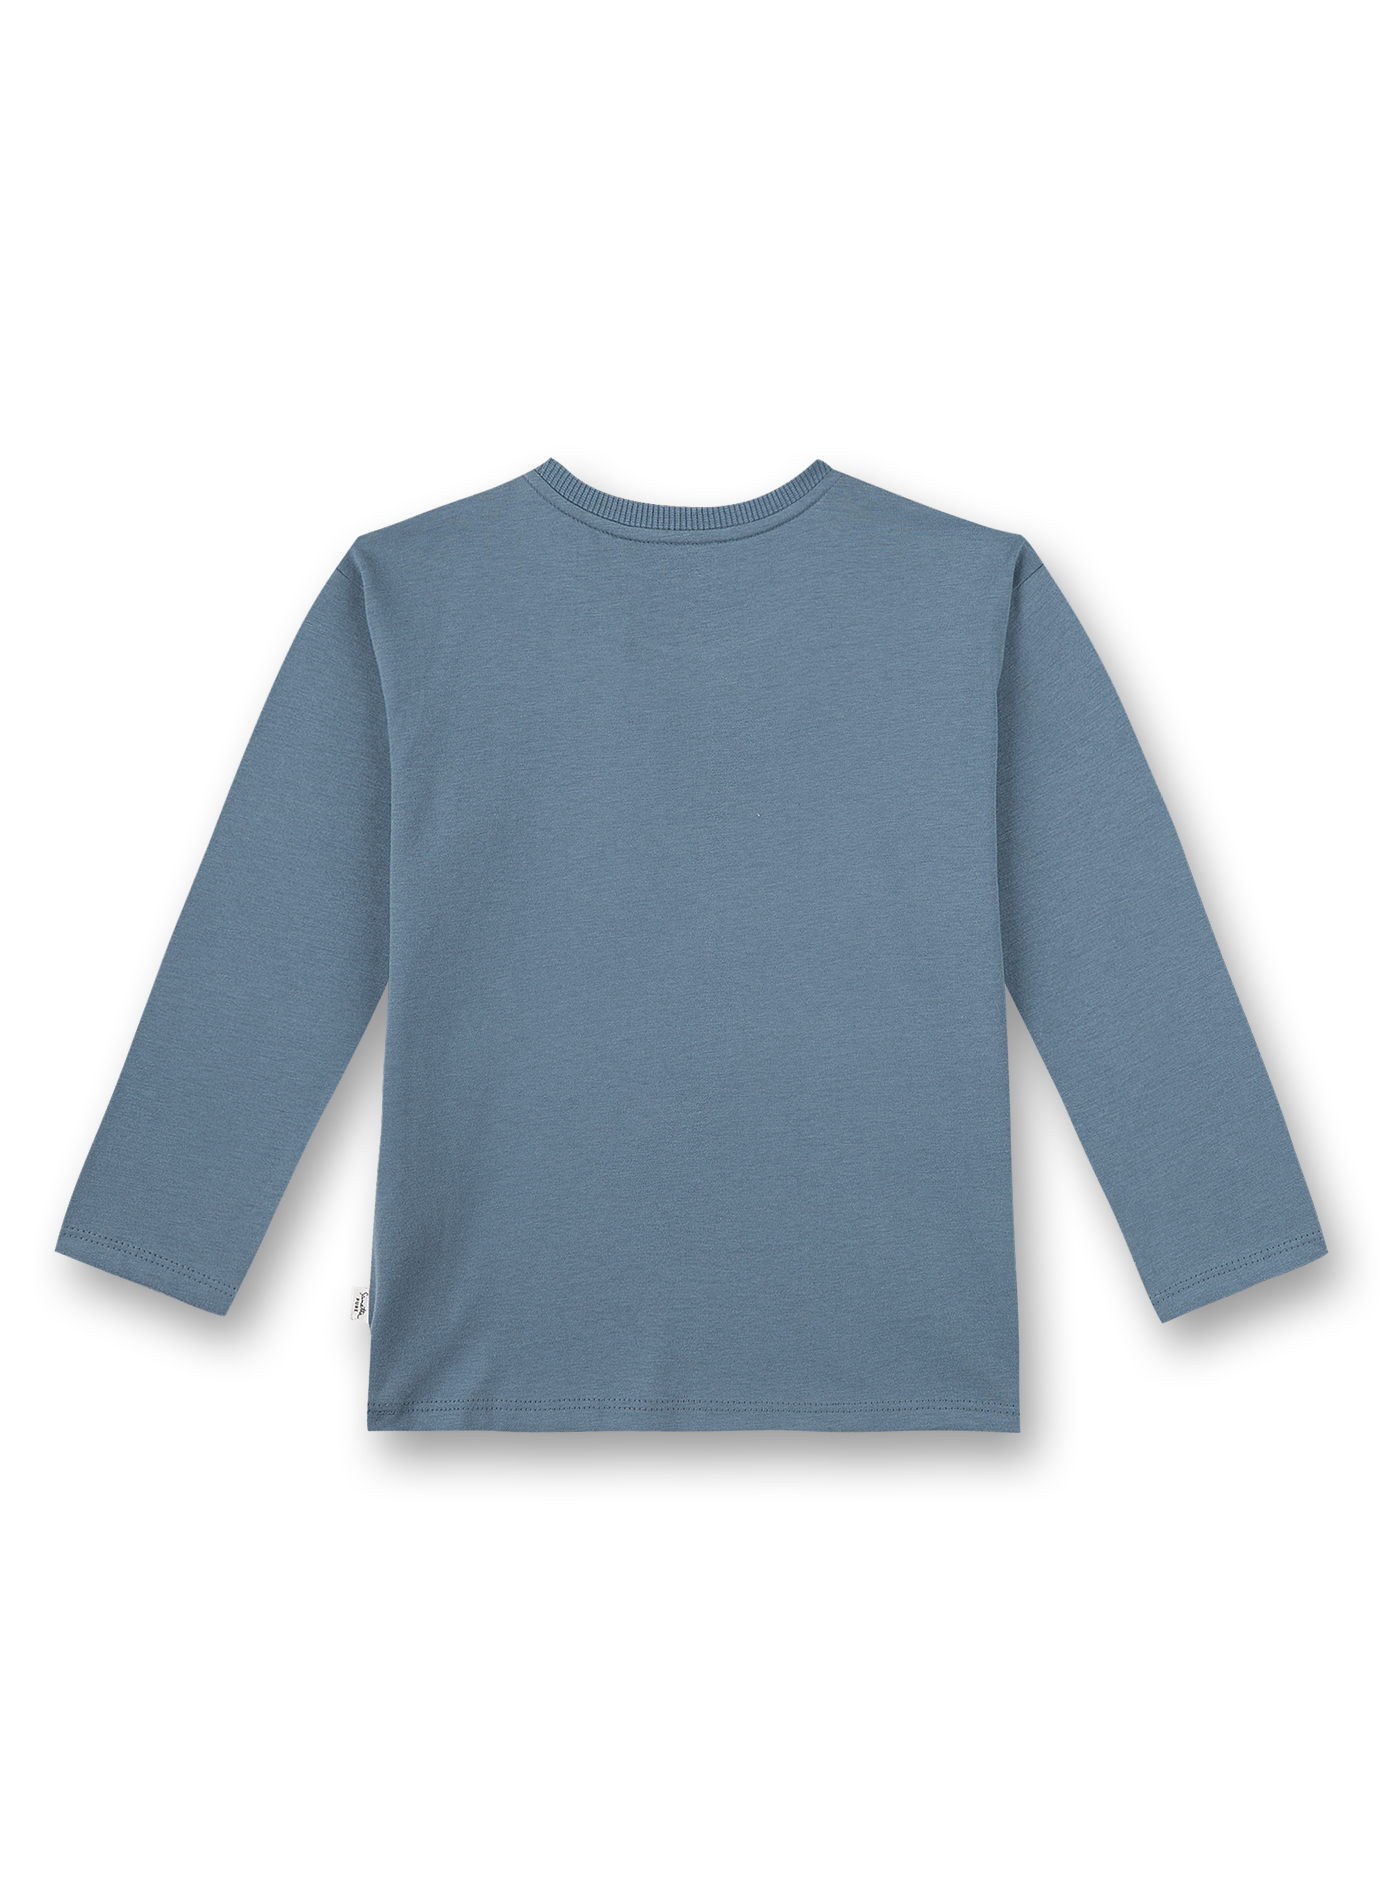 Jungen-Shirt langarm Blau